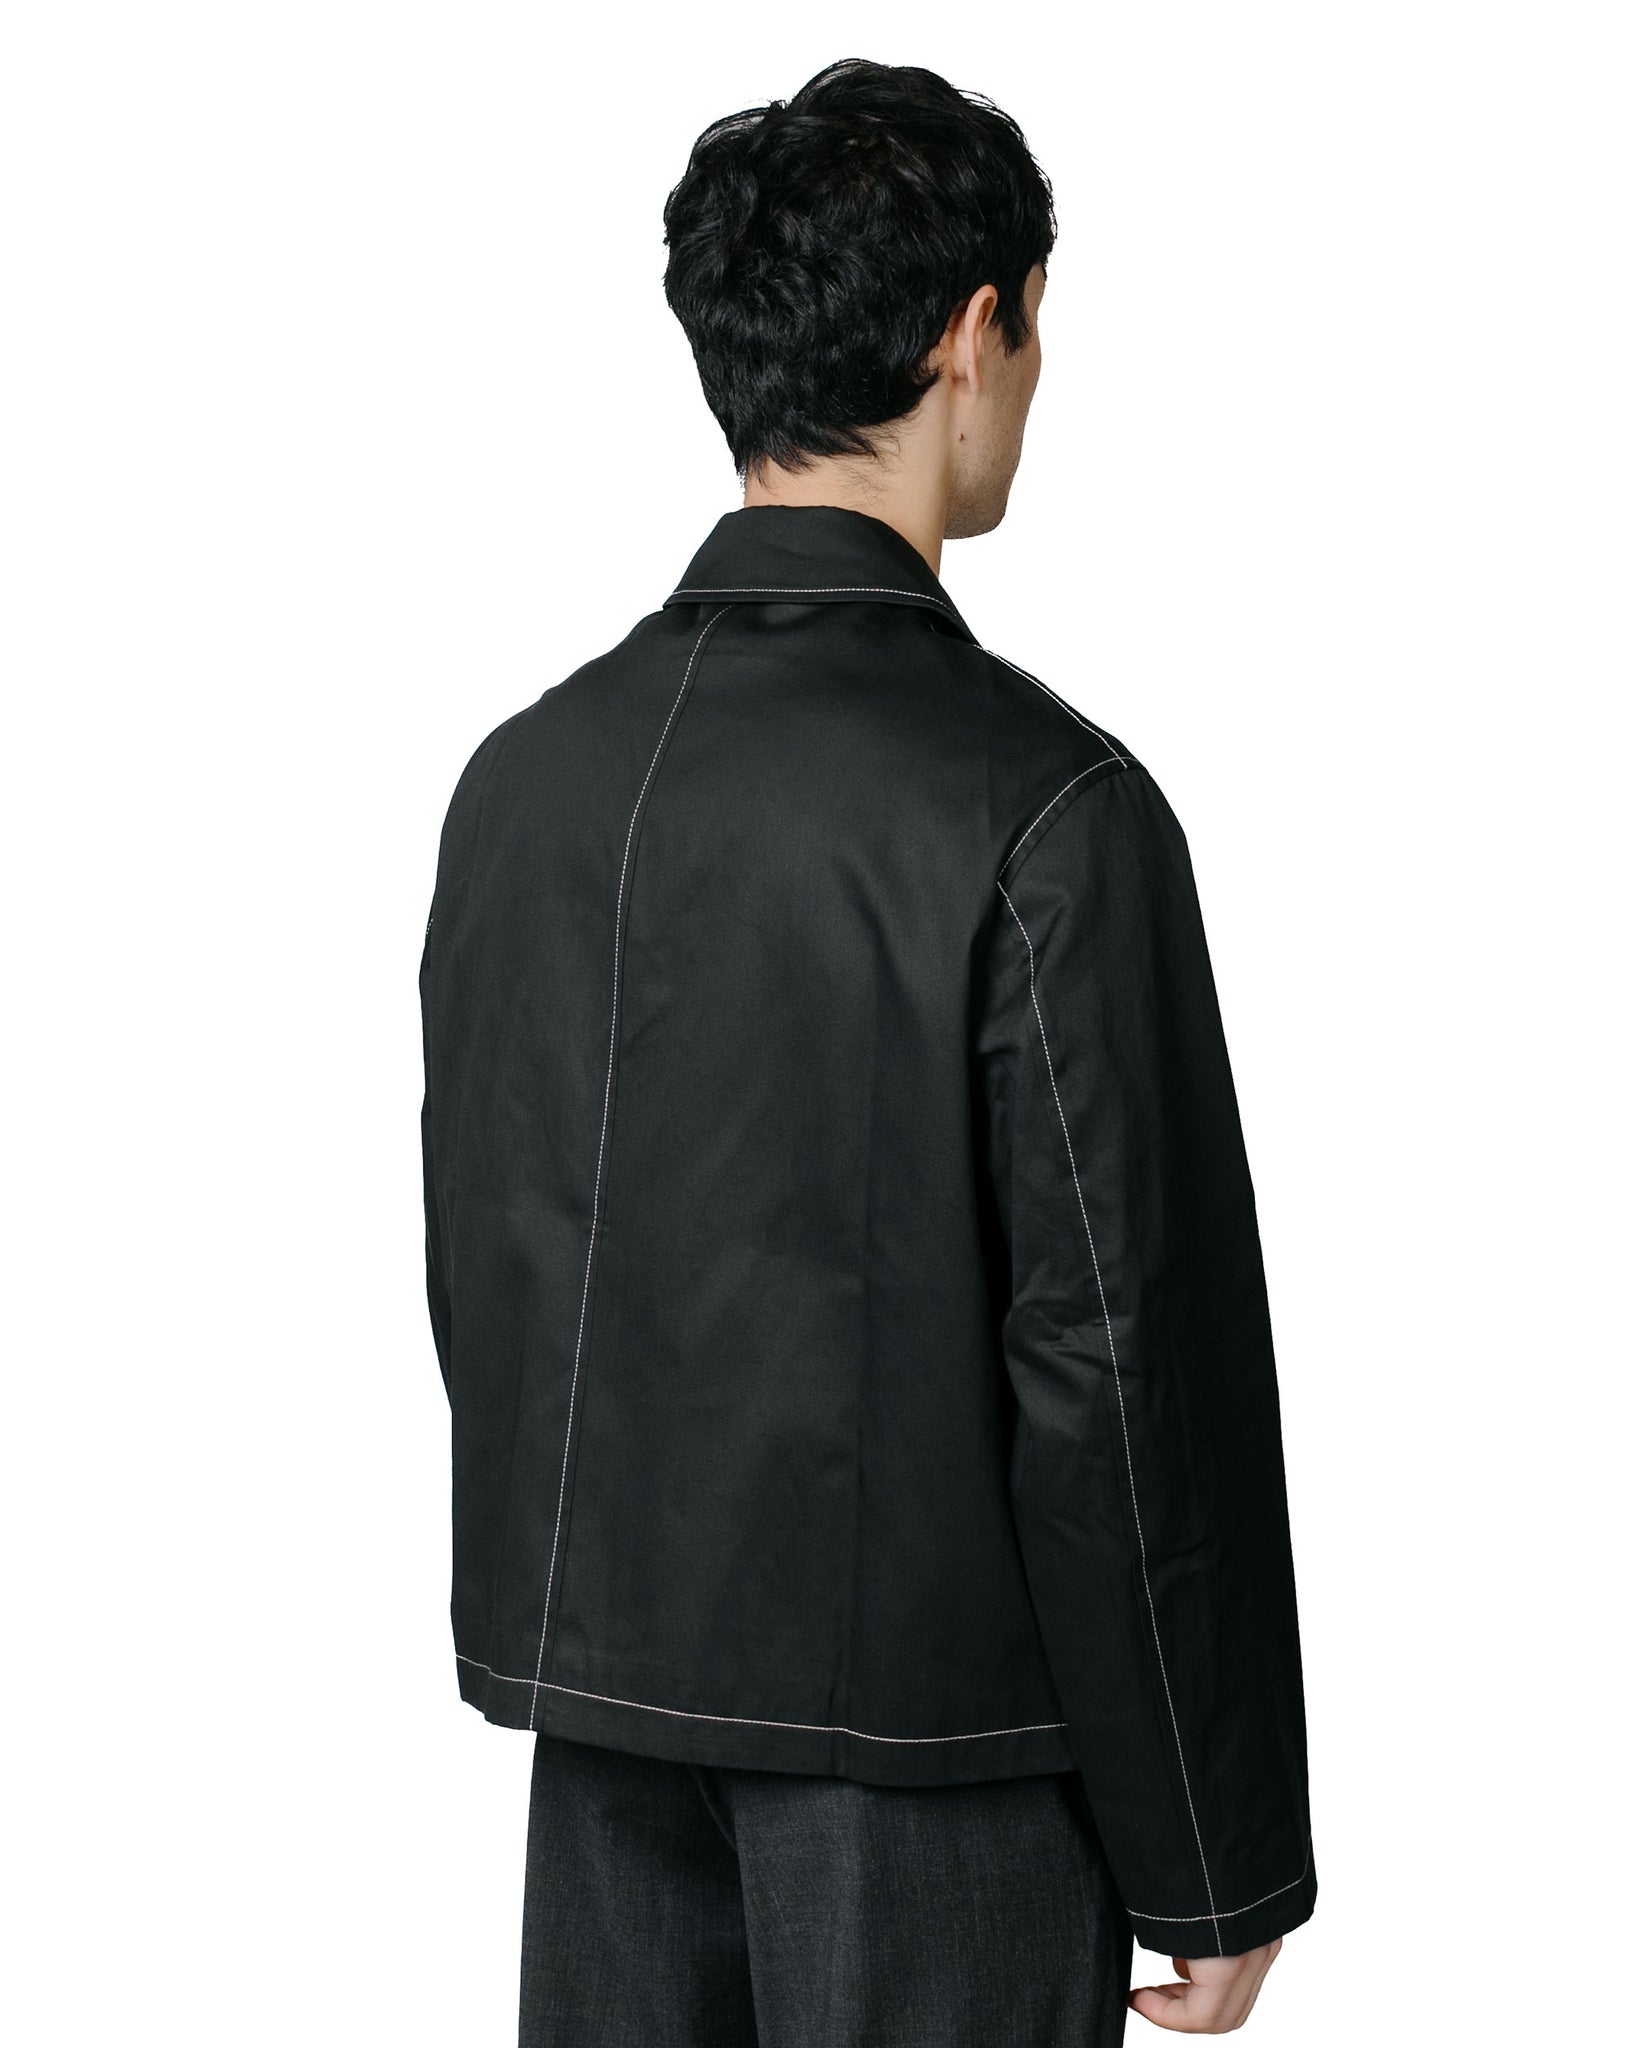 James Coward Site Jacket Black Gabardine Contrast Stitch model back